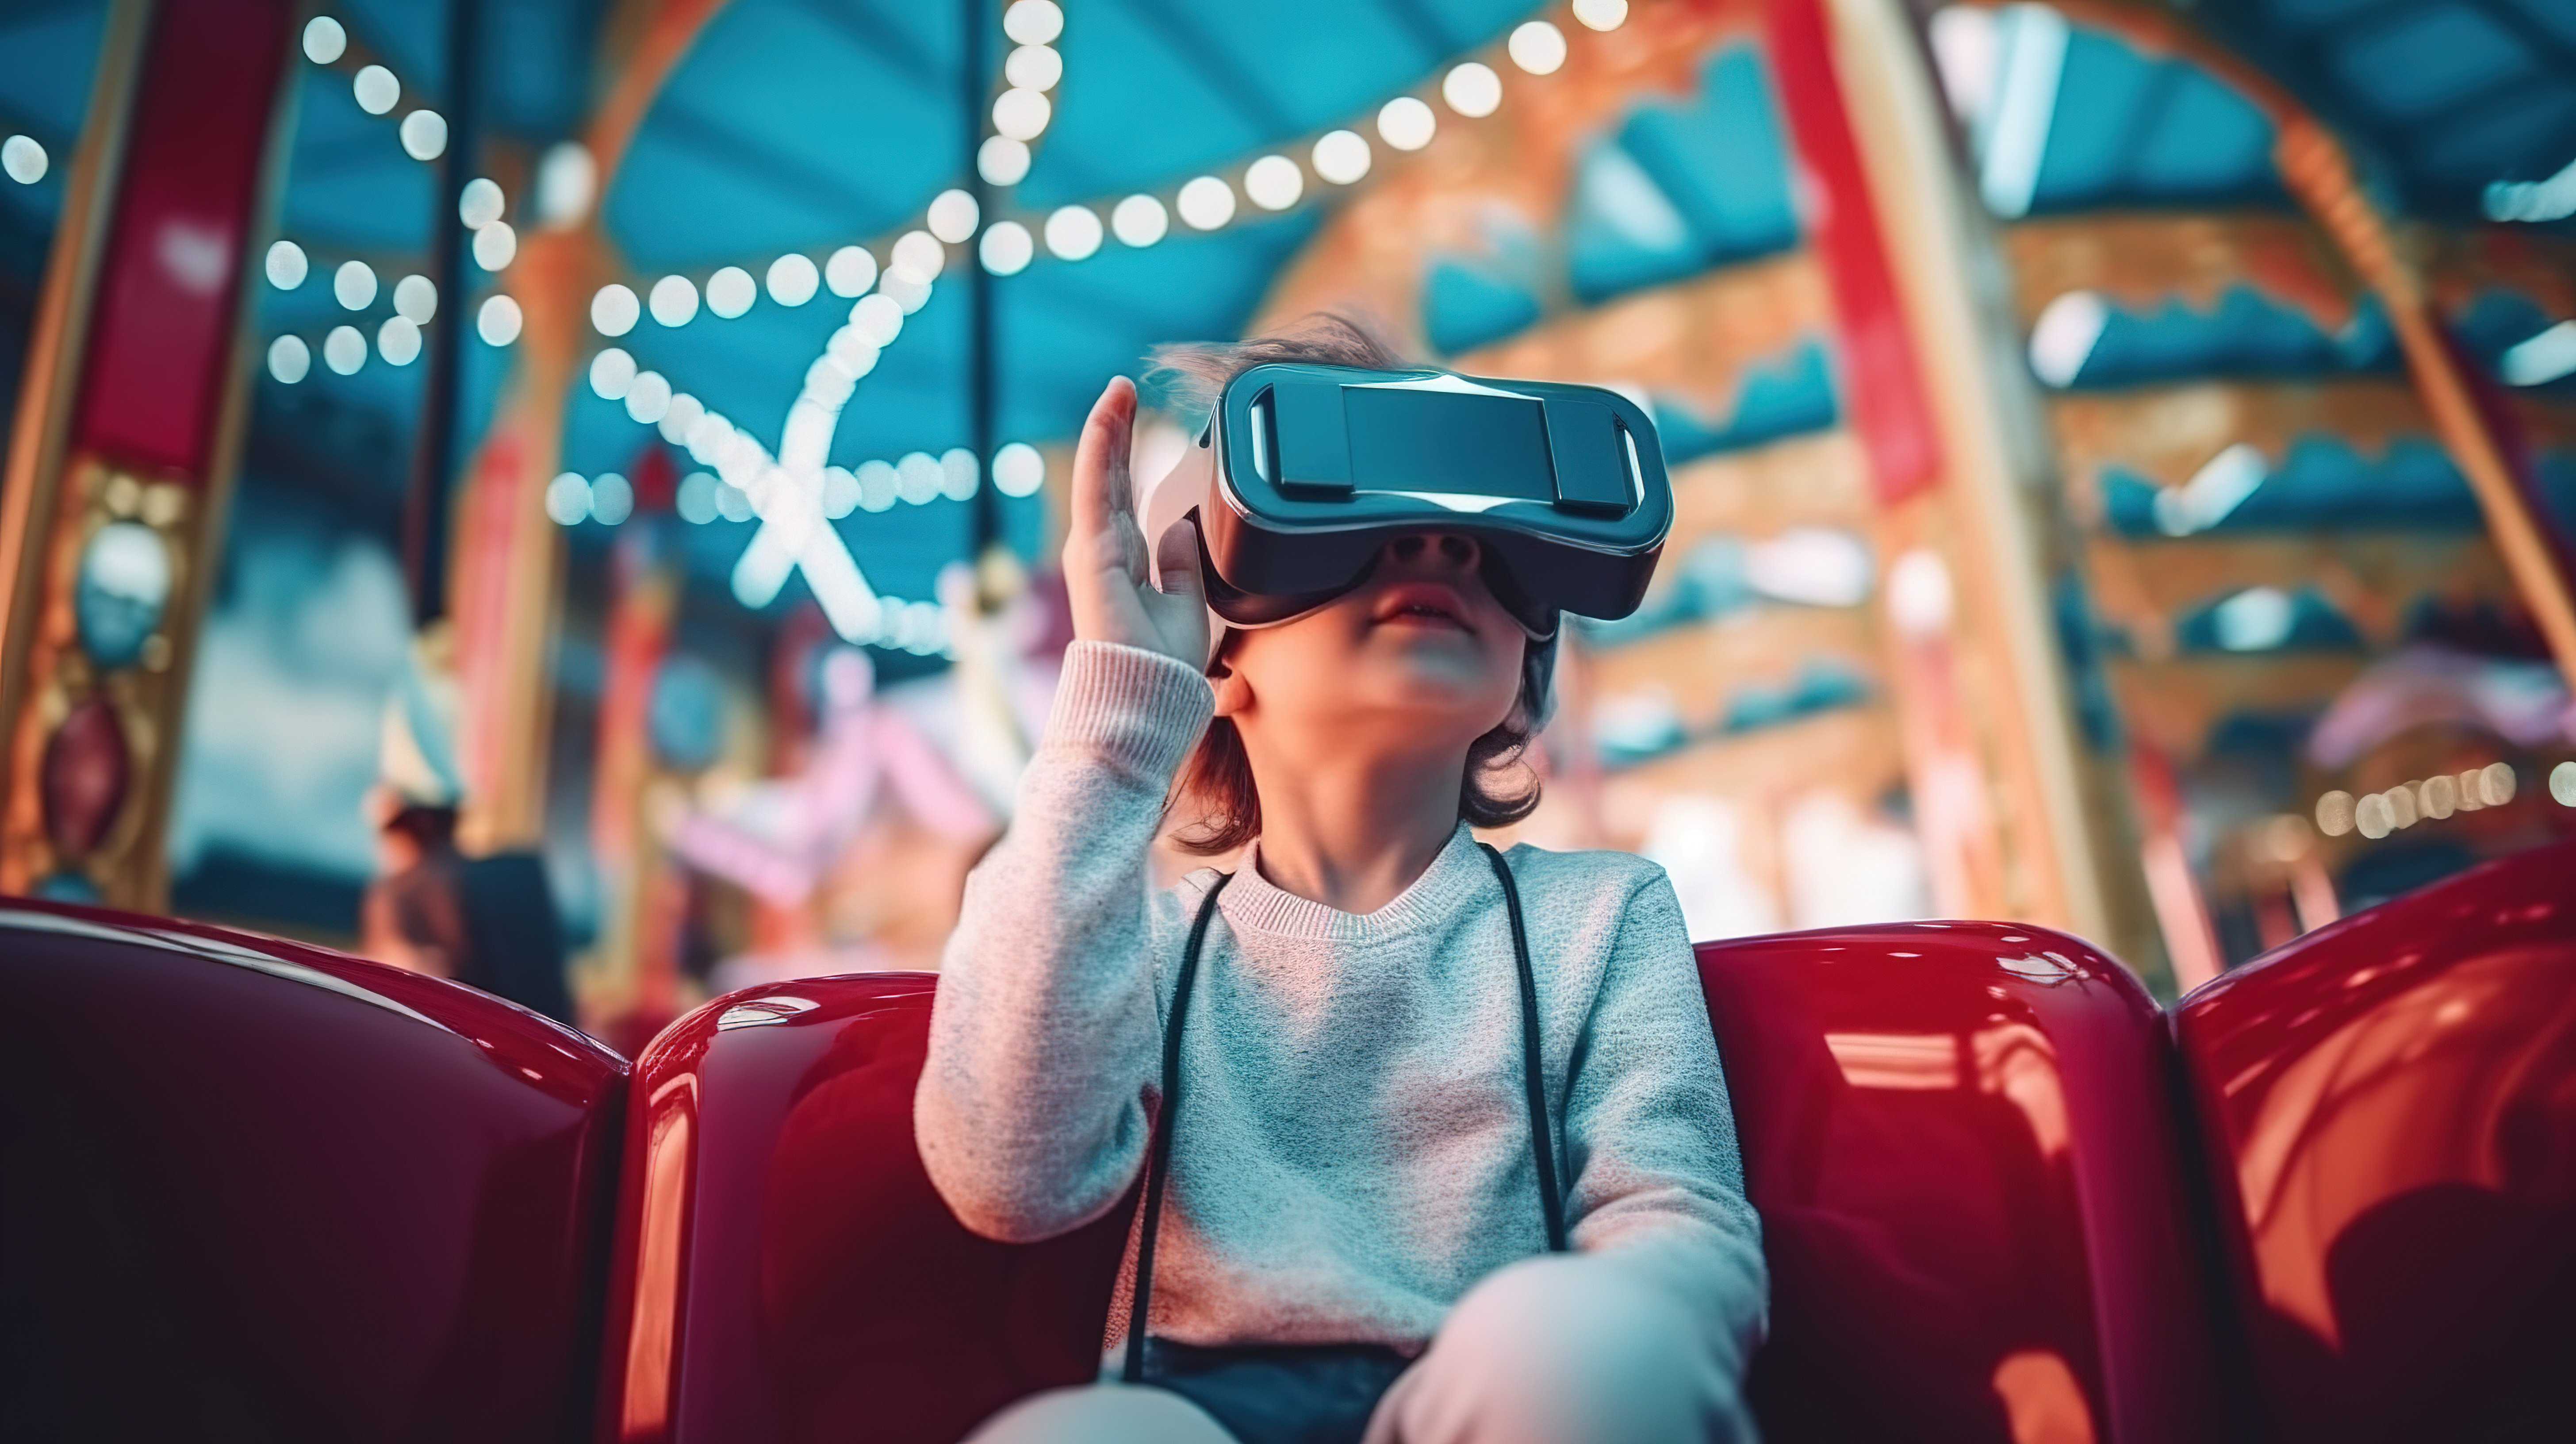 一个小男孩在体验游乐设施或观看 3D 电影时戴着 VR 耳机沉浸在虚拟世界中图片